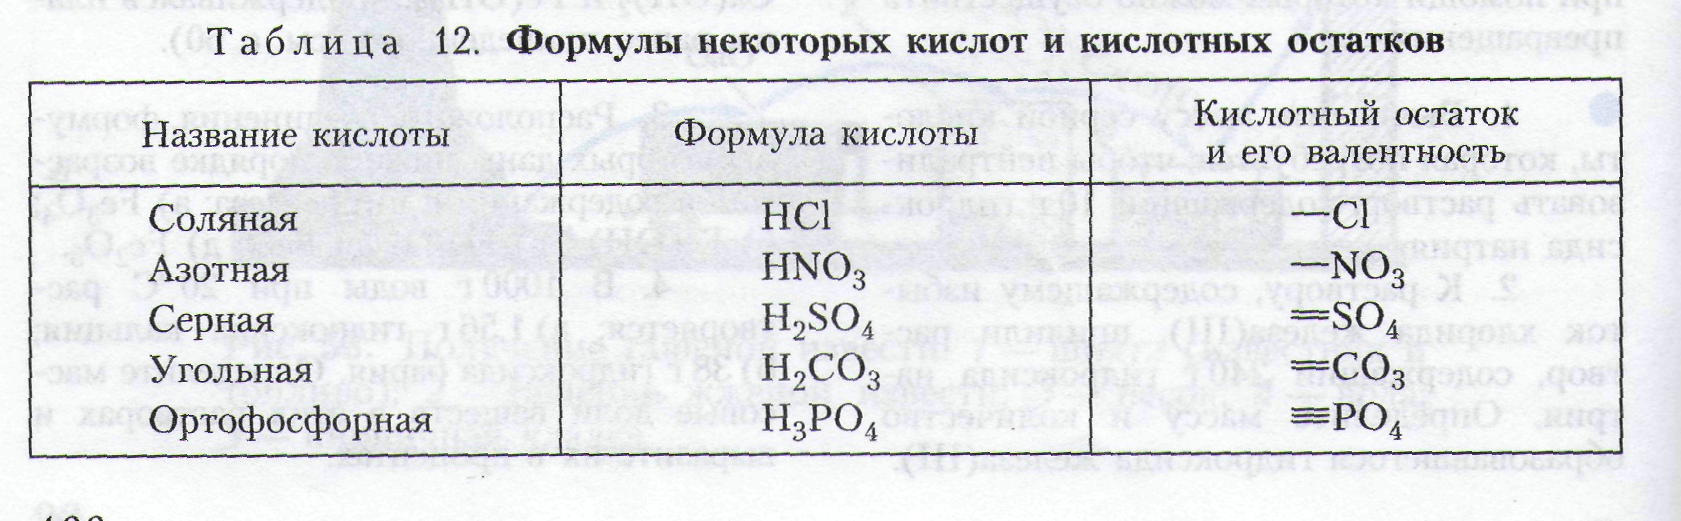 Химические формулы кислот химия 8 класс. Формулы некоторых кислот и кислотных остатков таблица 8 класс. Формулы некоторых кислот и кислотных остатков таблица. Формулы кислотных остатков таблица. Формулы некоторых кислот и кислотных остатков 8 класс химия таблица.